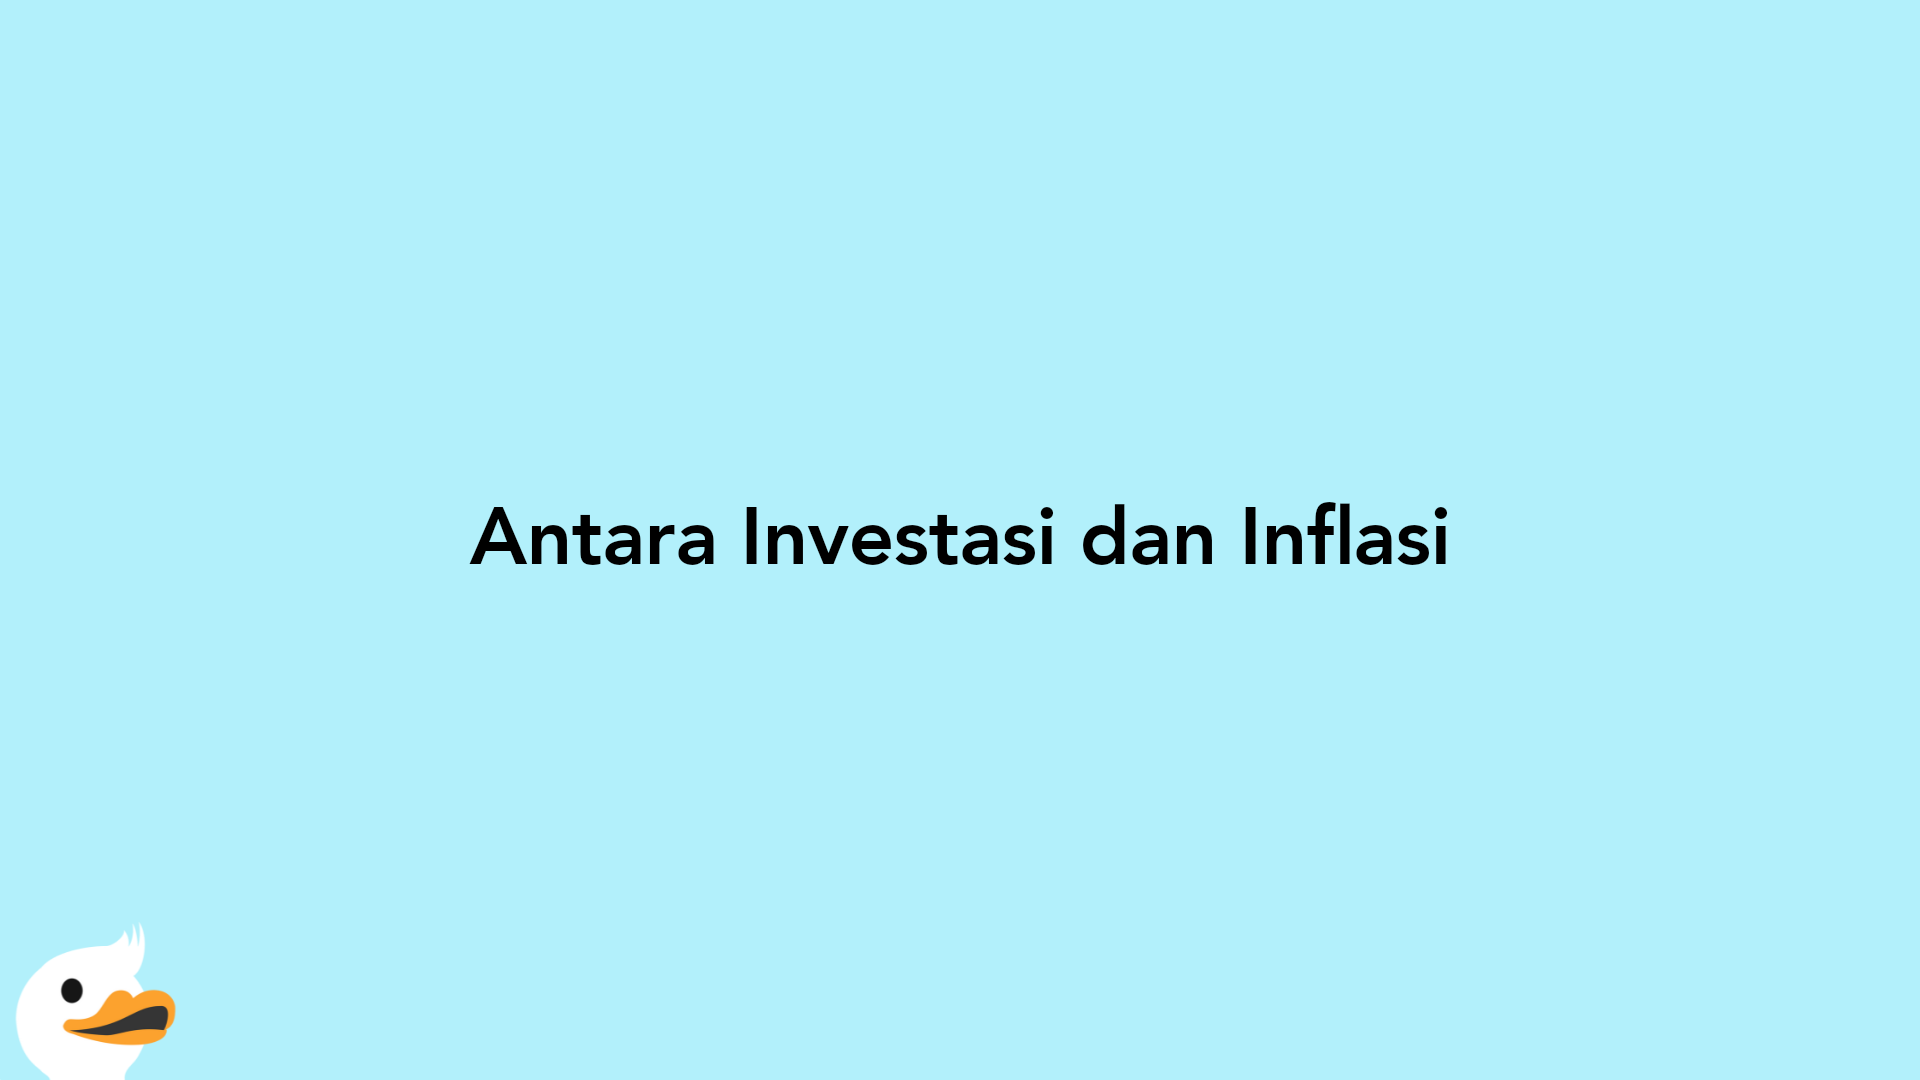 Antara Investasi dan Inflasi